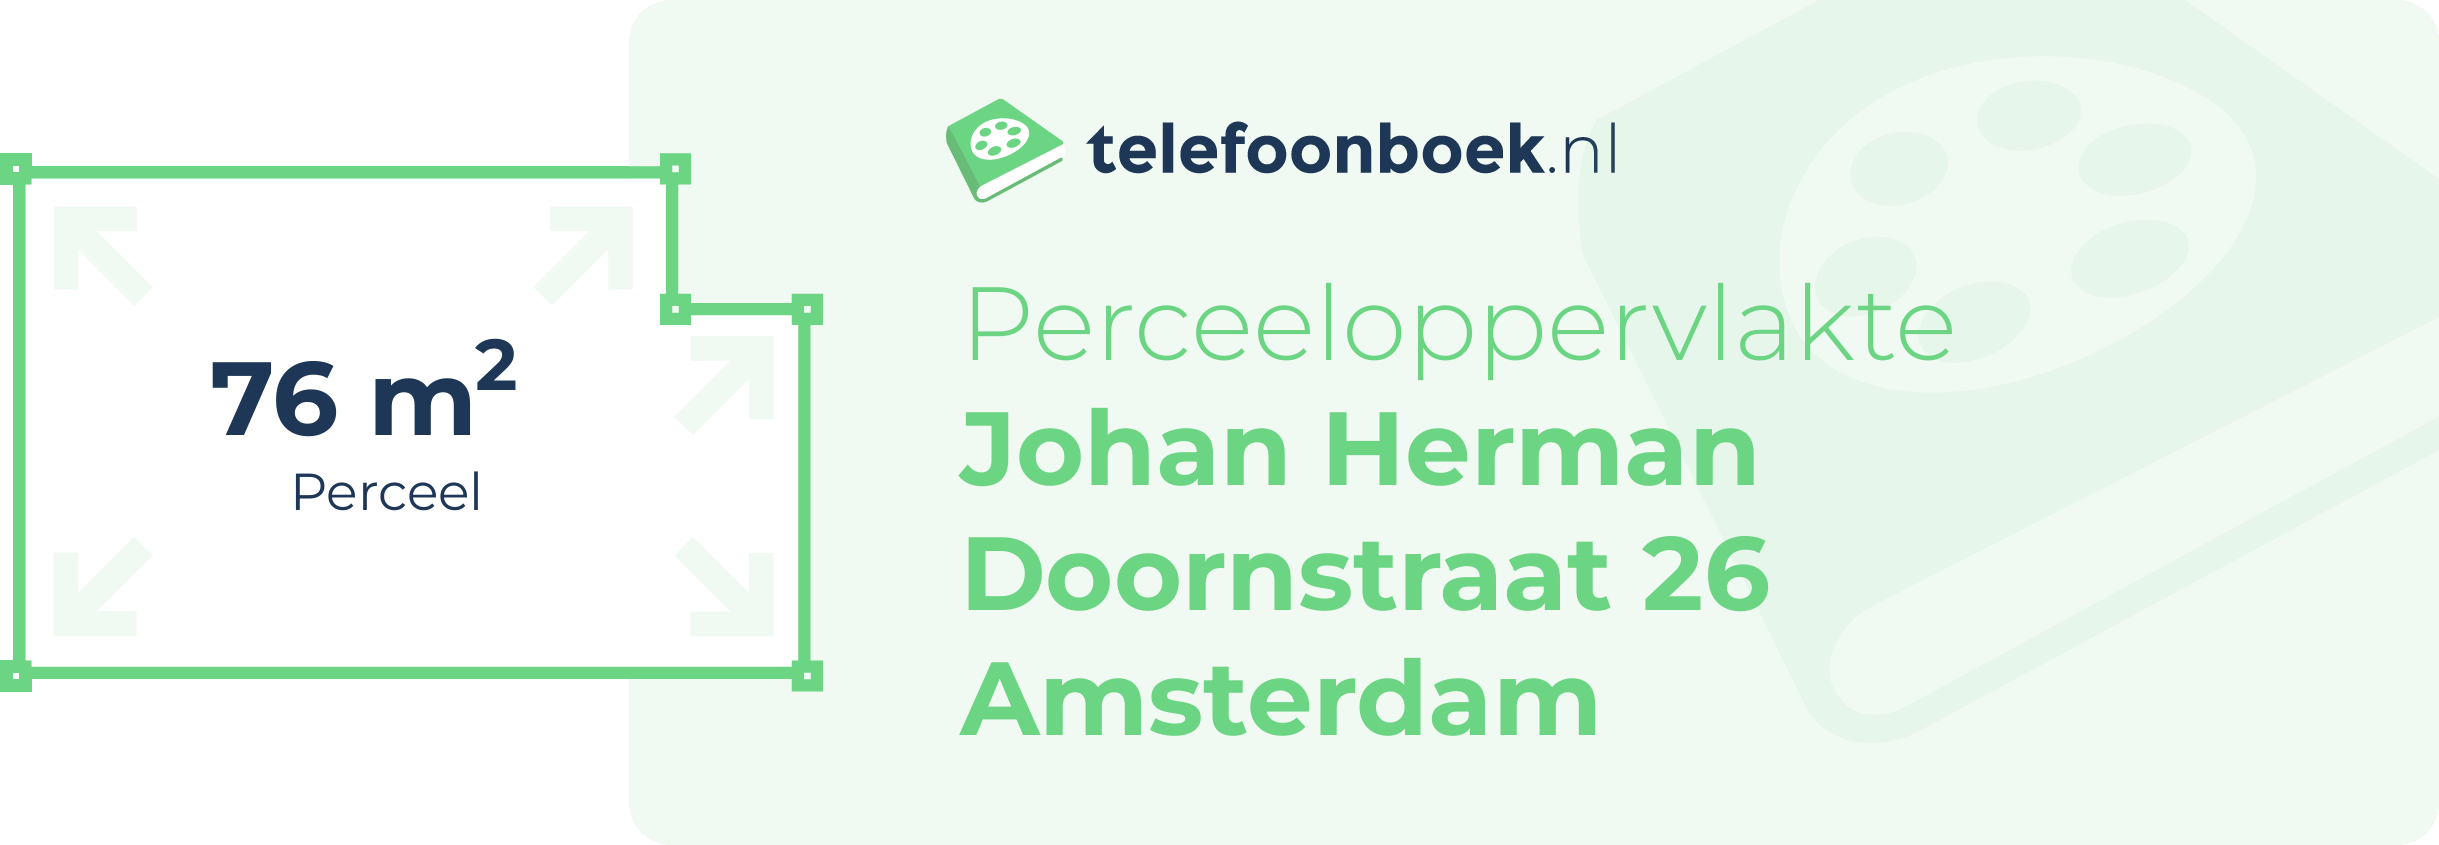 Perceeloppervlakte Johan Herman Doornstraat 26 Amsterdam